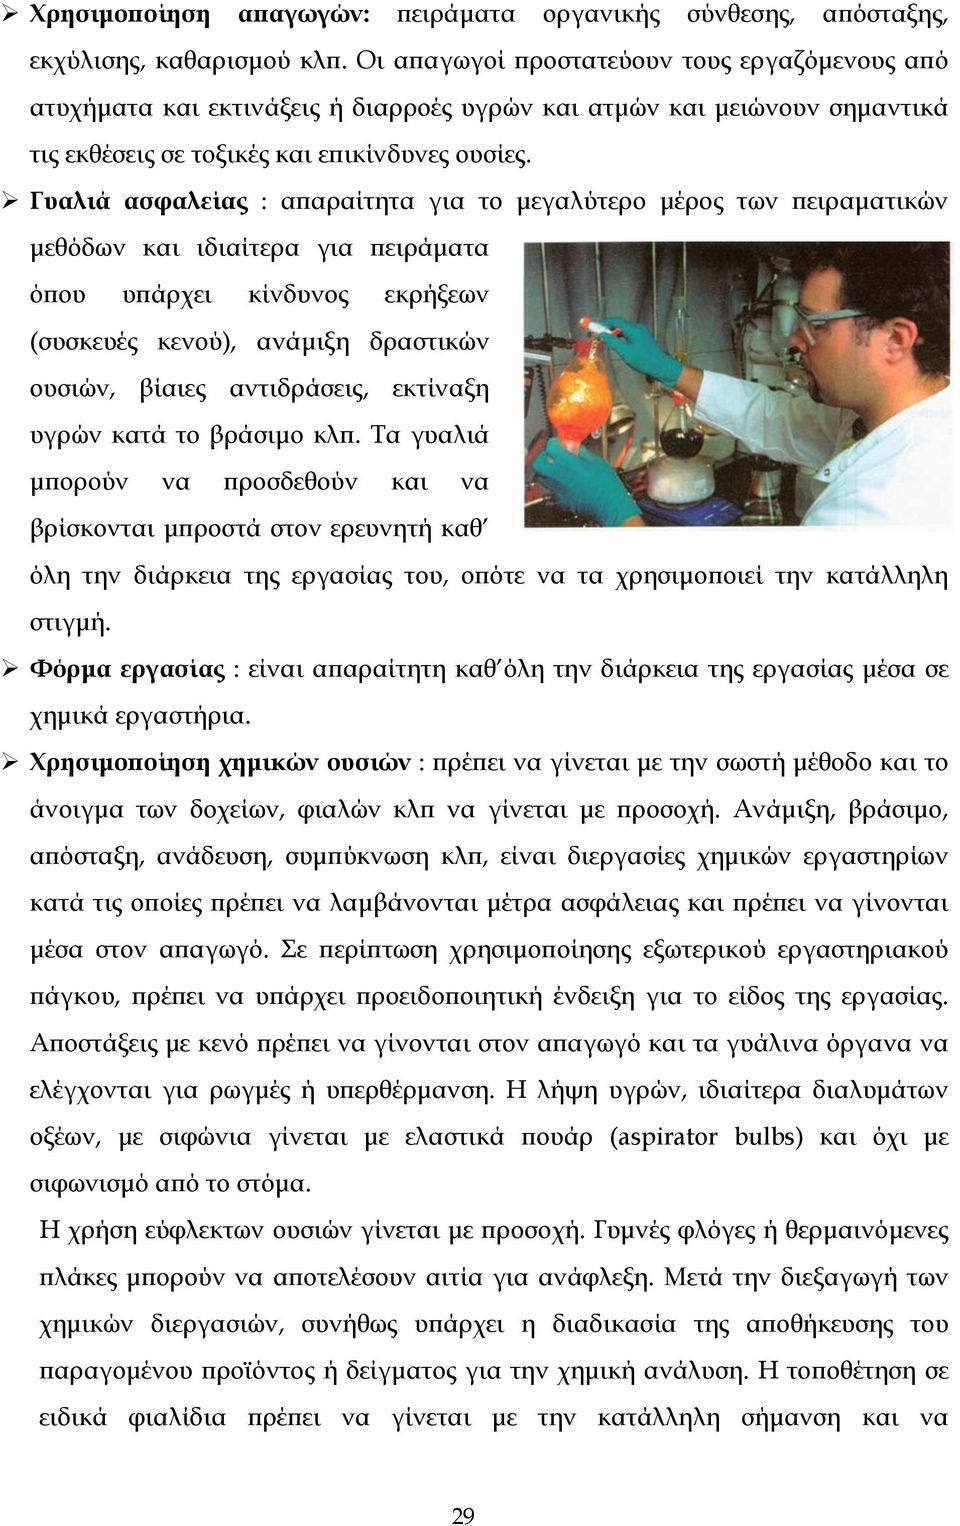 Γυαλιά ασφαλείας : απαραίτητα για το μεγαλύτερο μέρος των πειραματικών μεθόδων και ιδιαίτερα για πειράματα όπου υπάρχει κίνδυνος εκρήξεων (συσκευές κενού), ανάμιξη δραστικών ουσιών, βίαιες